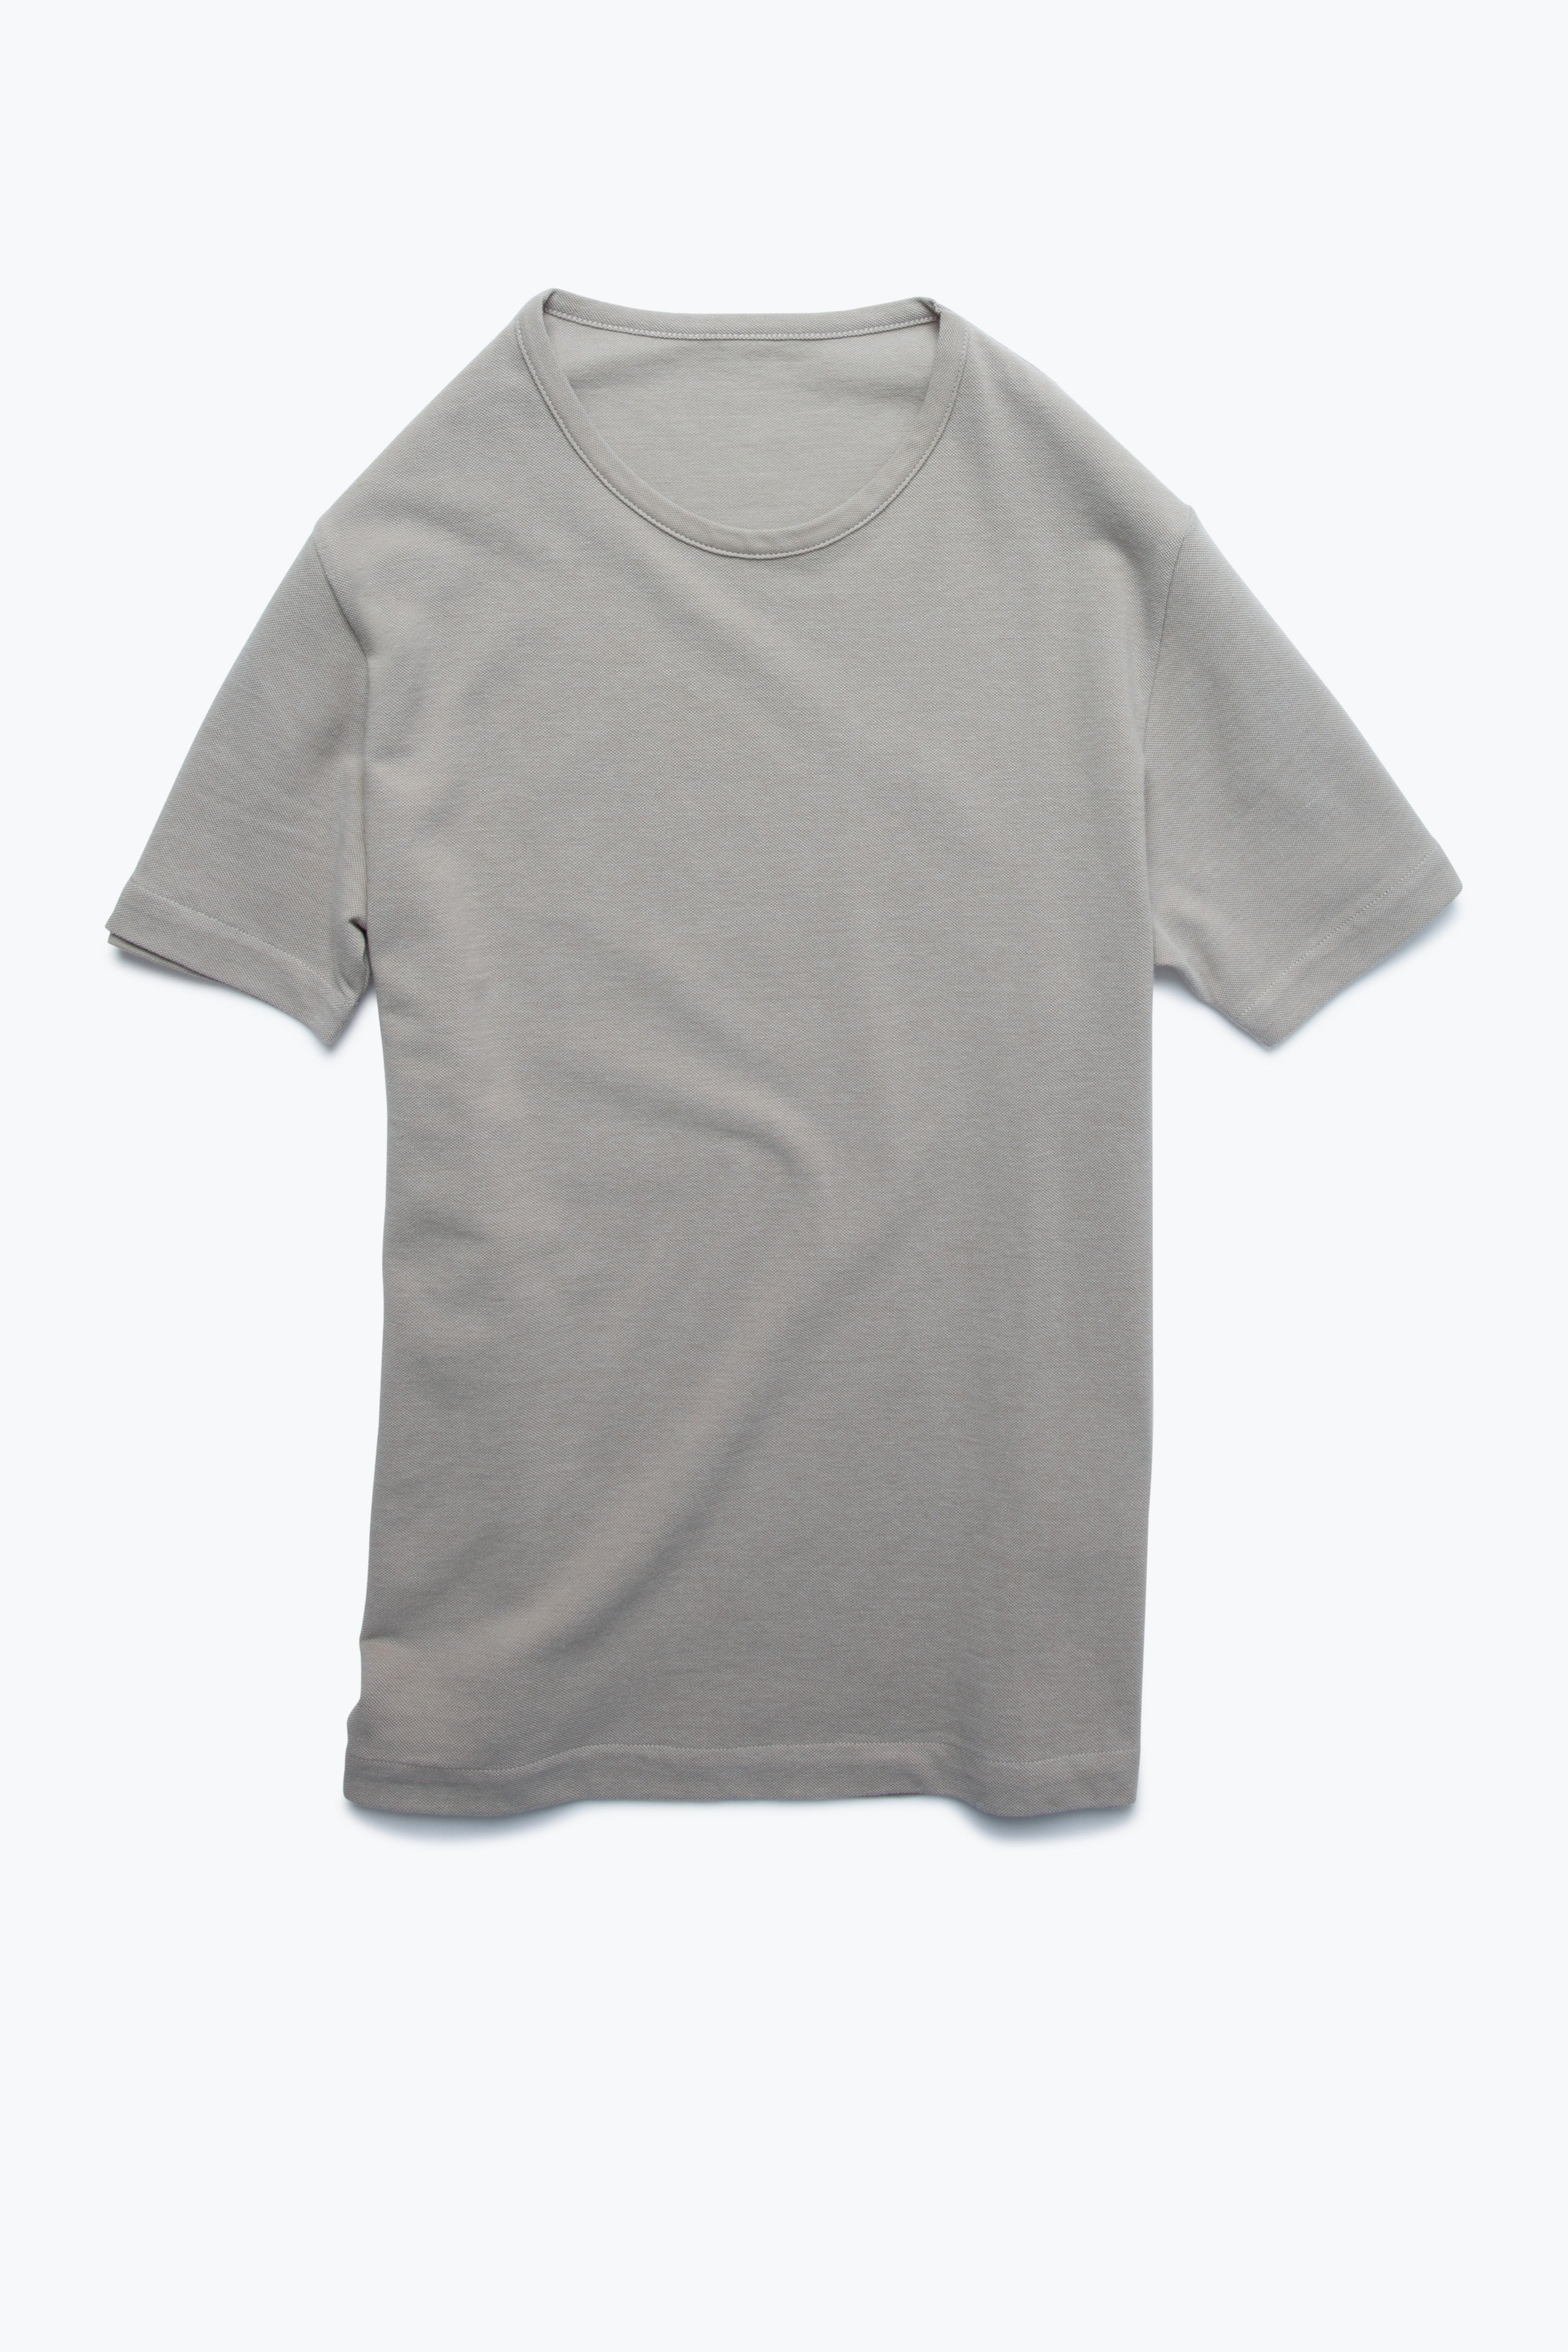 T-Shirt (Taupe Cotton Pique)